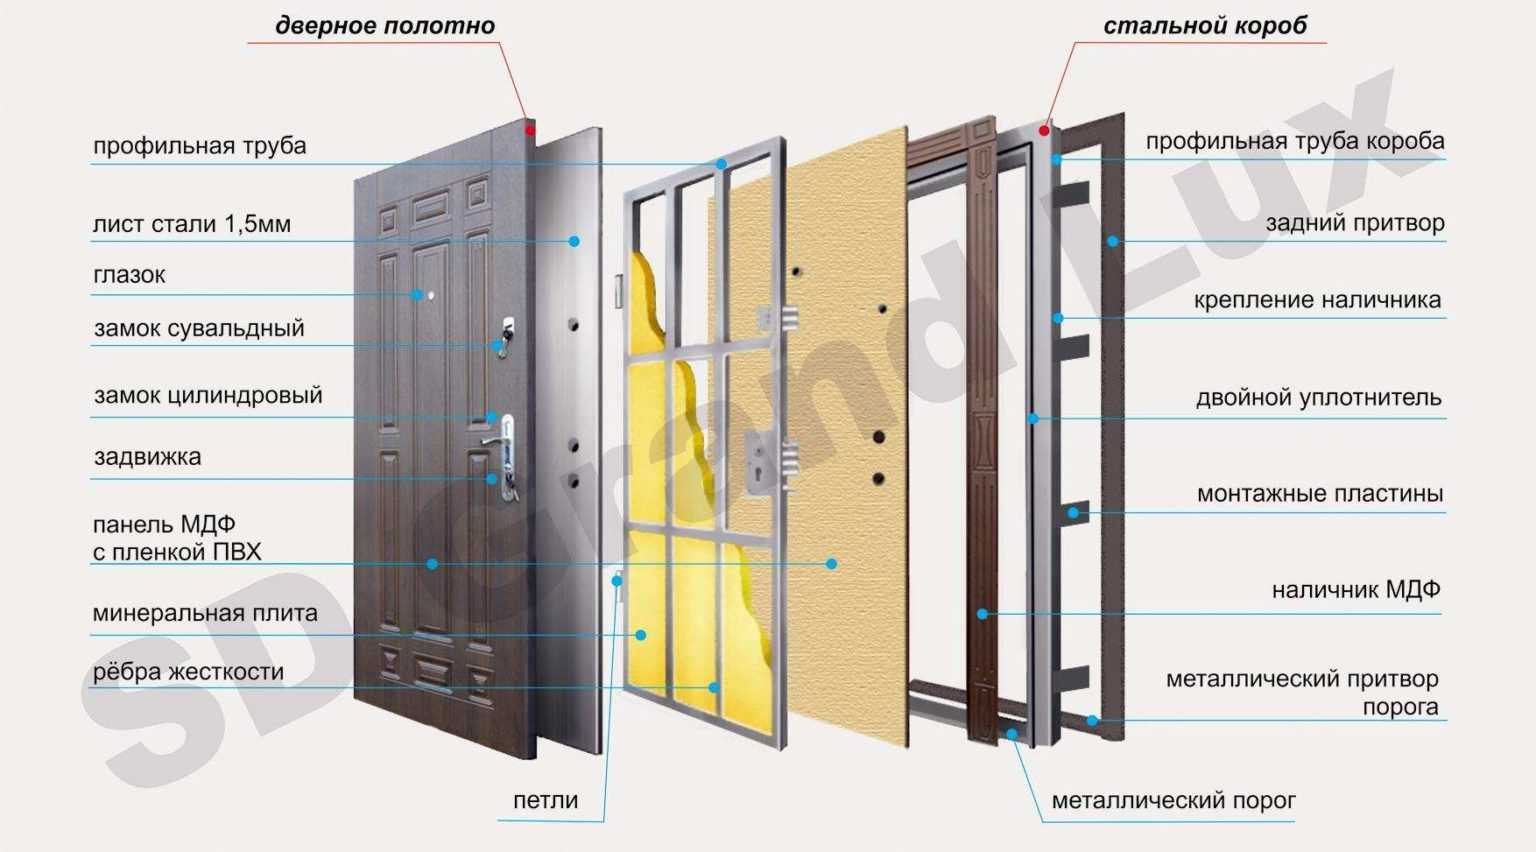 Виды дверей и их конструкции: какие бывают разновидности межкомнатных дверей